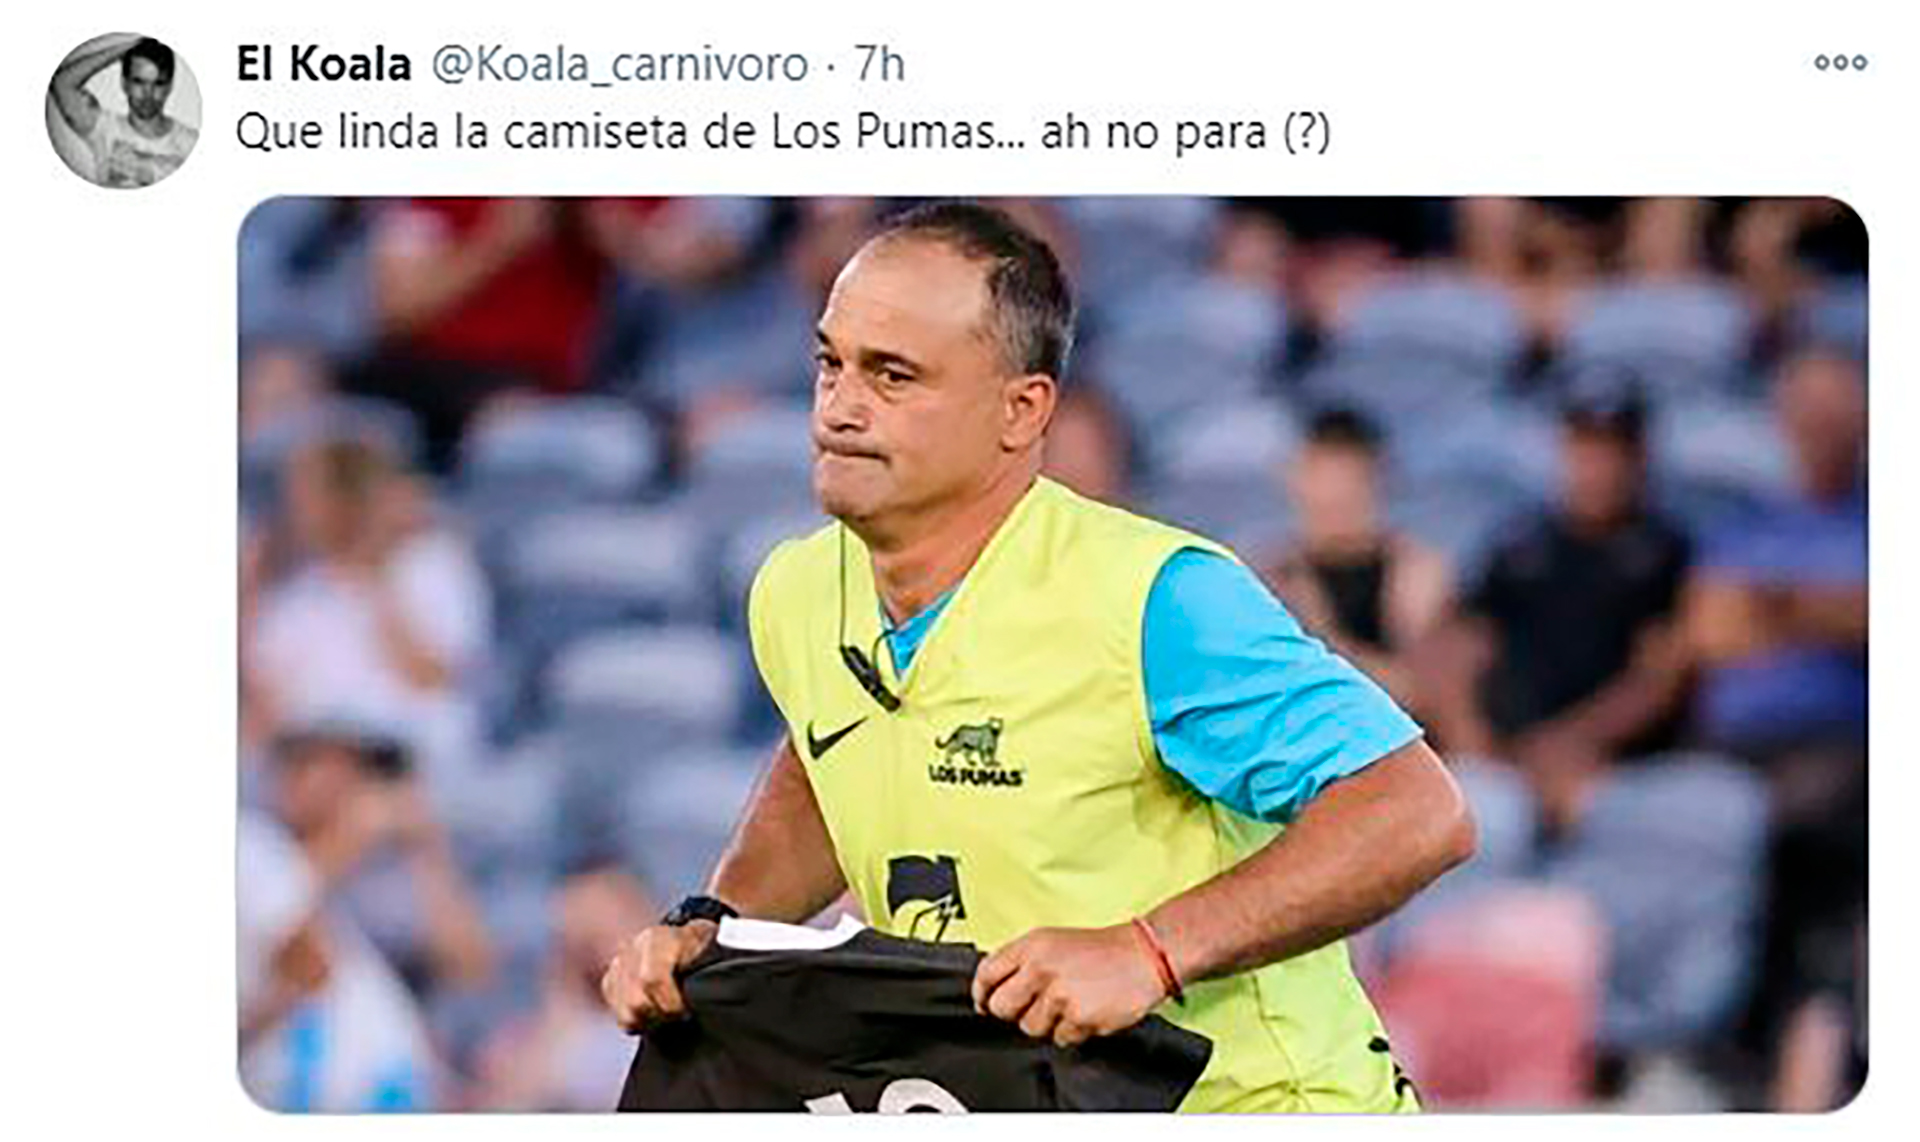 Especialista Correspondiente a descuento Los memes en las redes contra Los Pumas por no homenajear a Maradona en el  duelo ante los All Blacks - Infobae